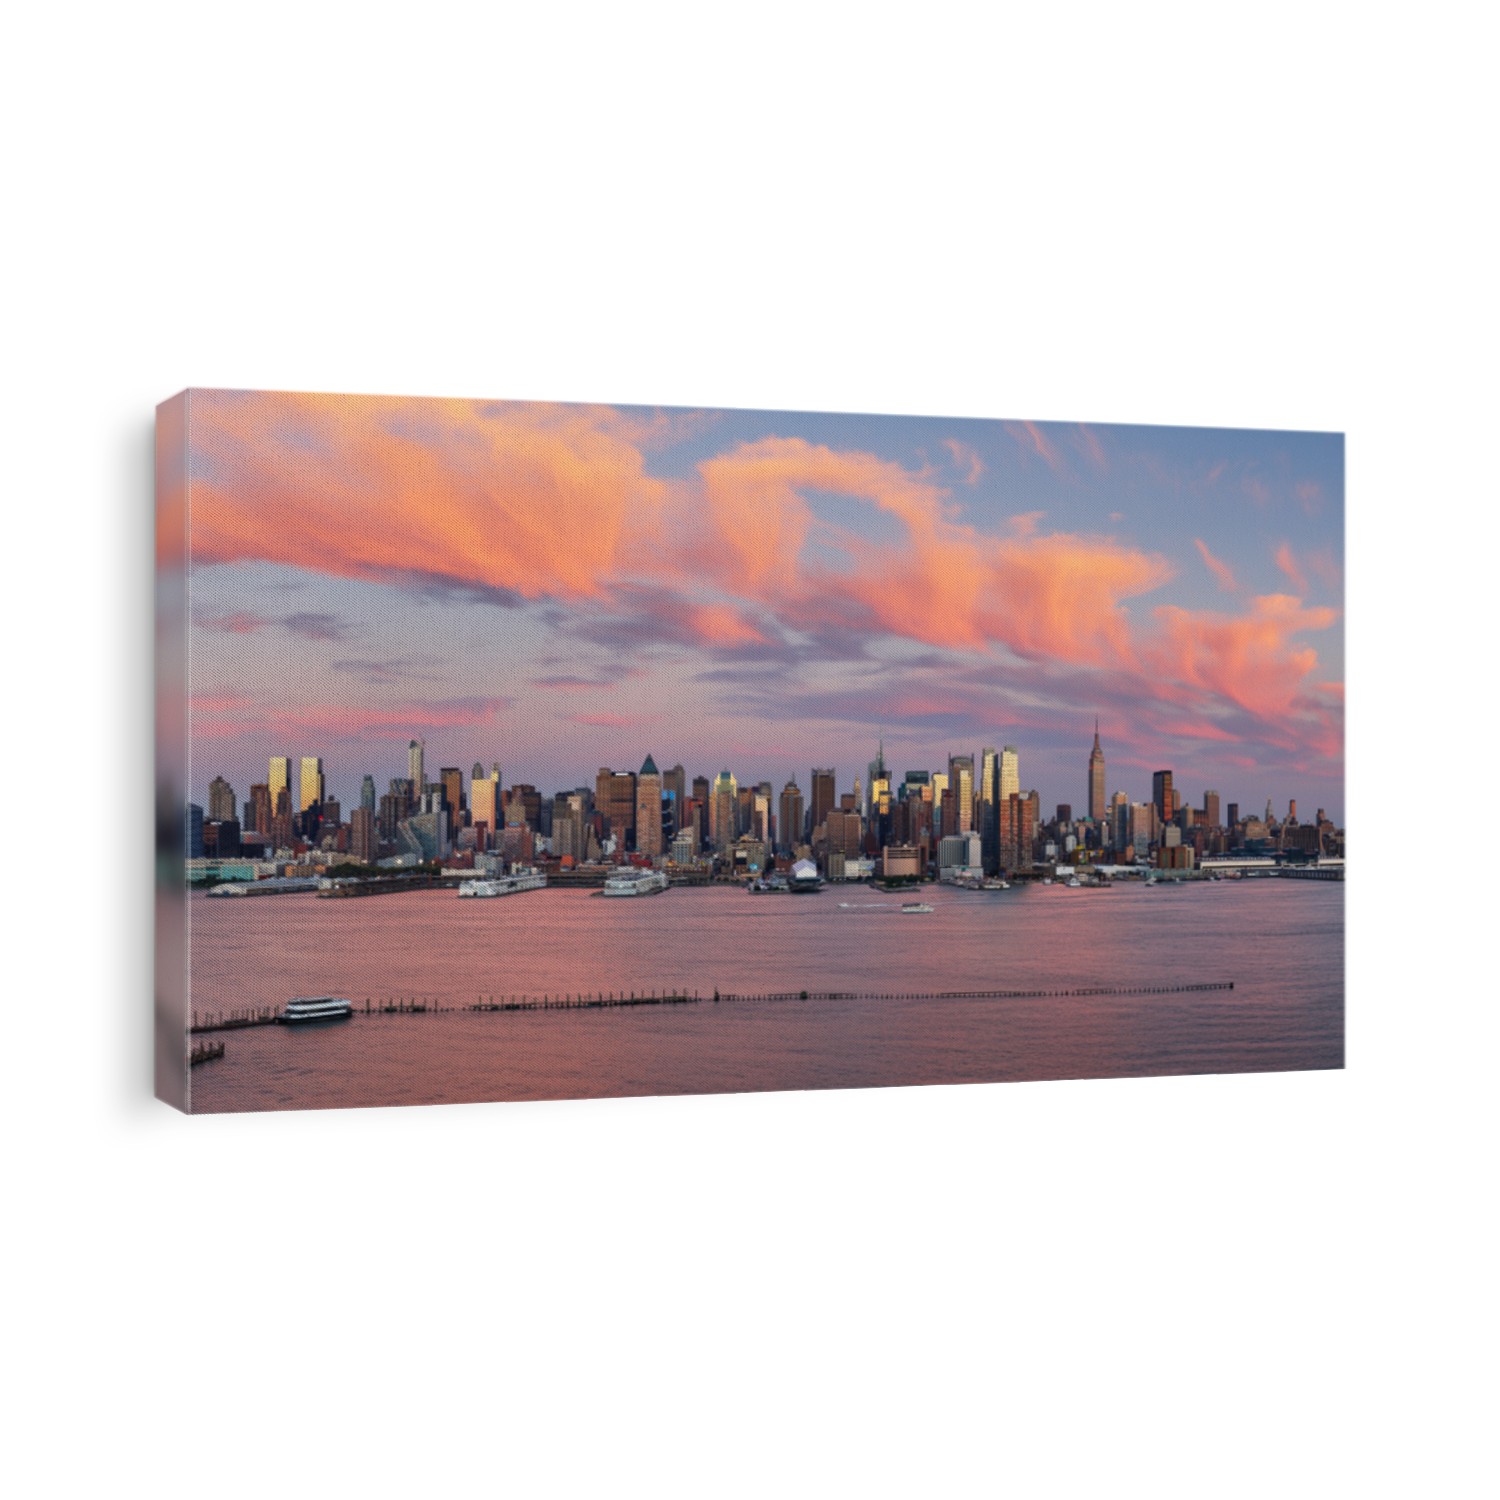 Manhattan Midtown skyline panorama before sunset, New York